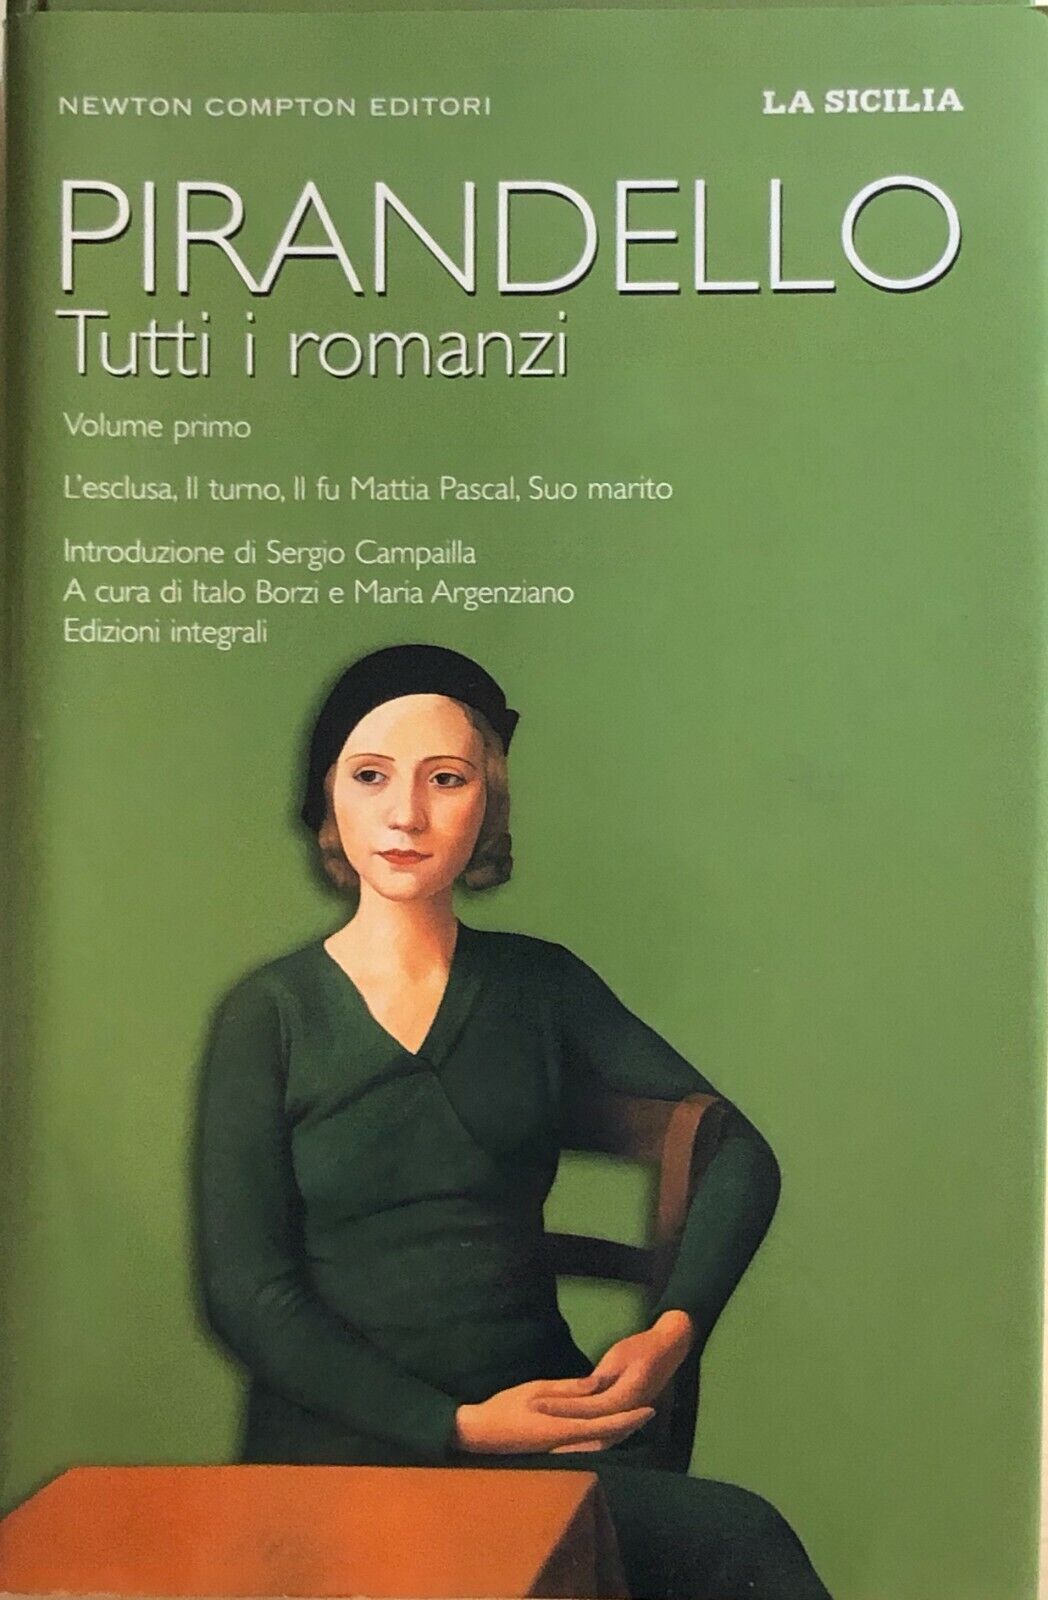 Pirandello, tutti i romanzi Vol.I  di Luigi Pirandello, 2007, Newton Compton Edi